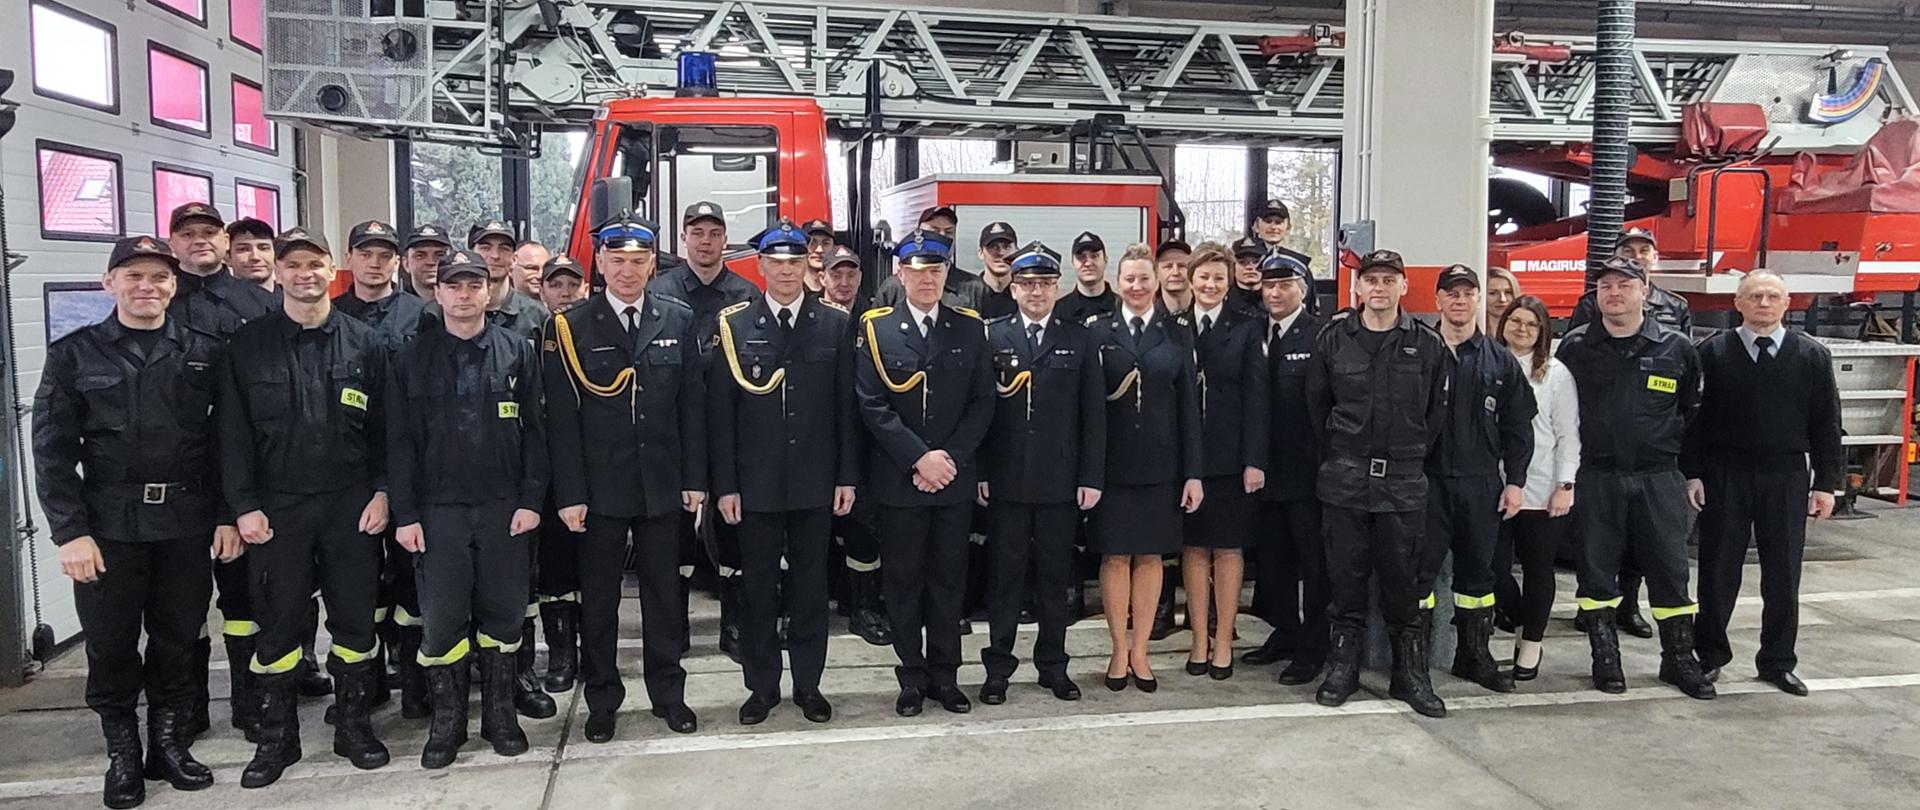 Na zdjęciu grupowym strażacy w mundurach wyjściowych i służbowych stoją na tle drabiny pożarniczej